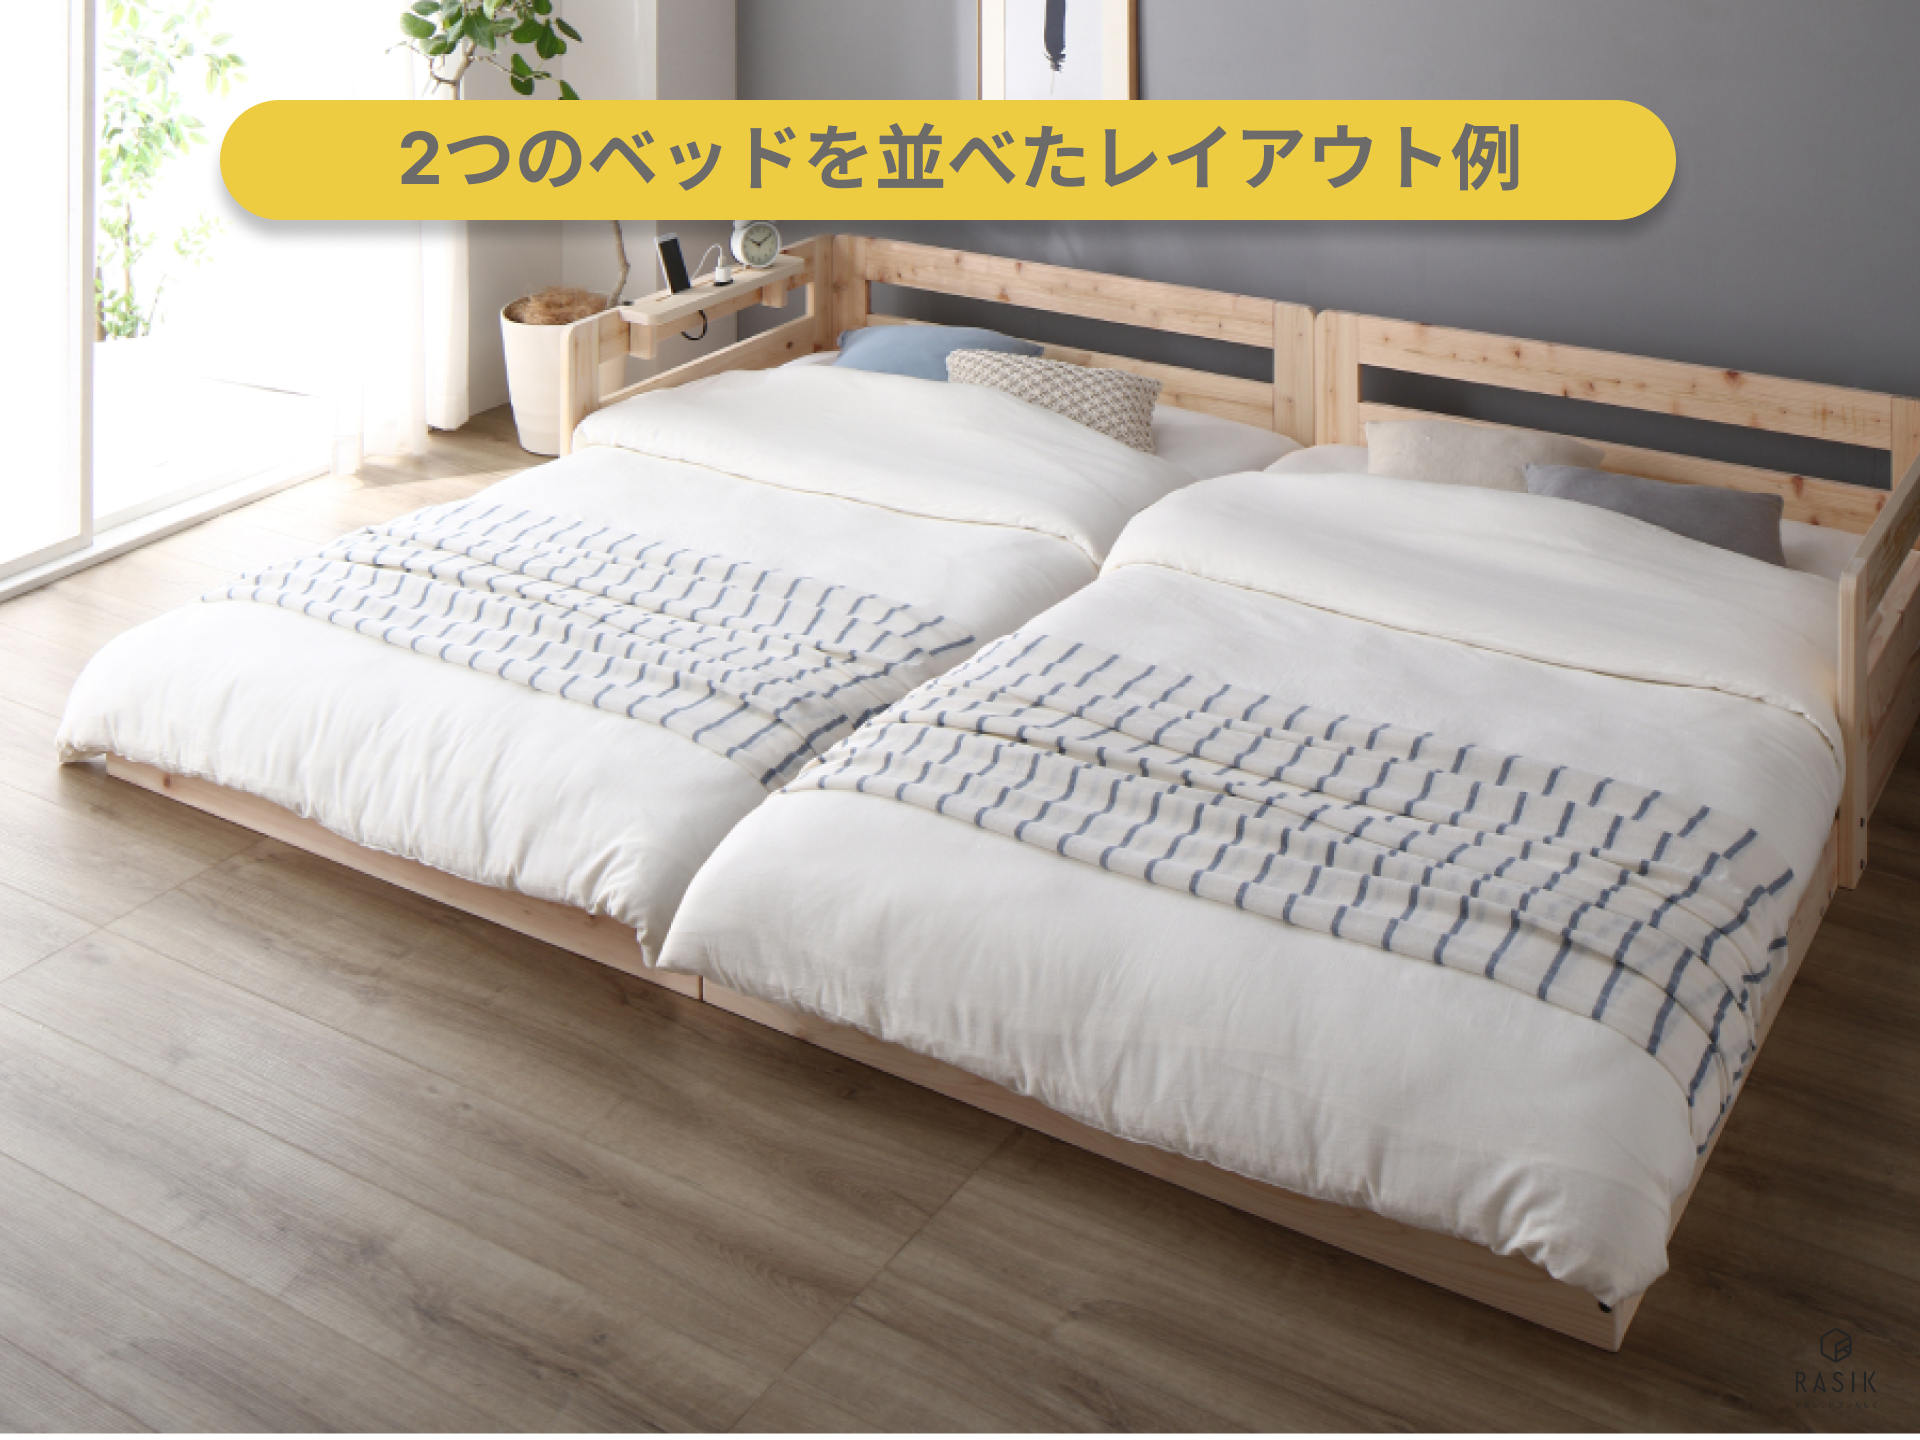 セミシングルベッドを2つ並べたイメージ画像